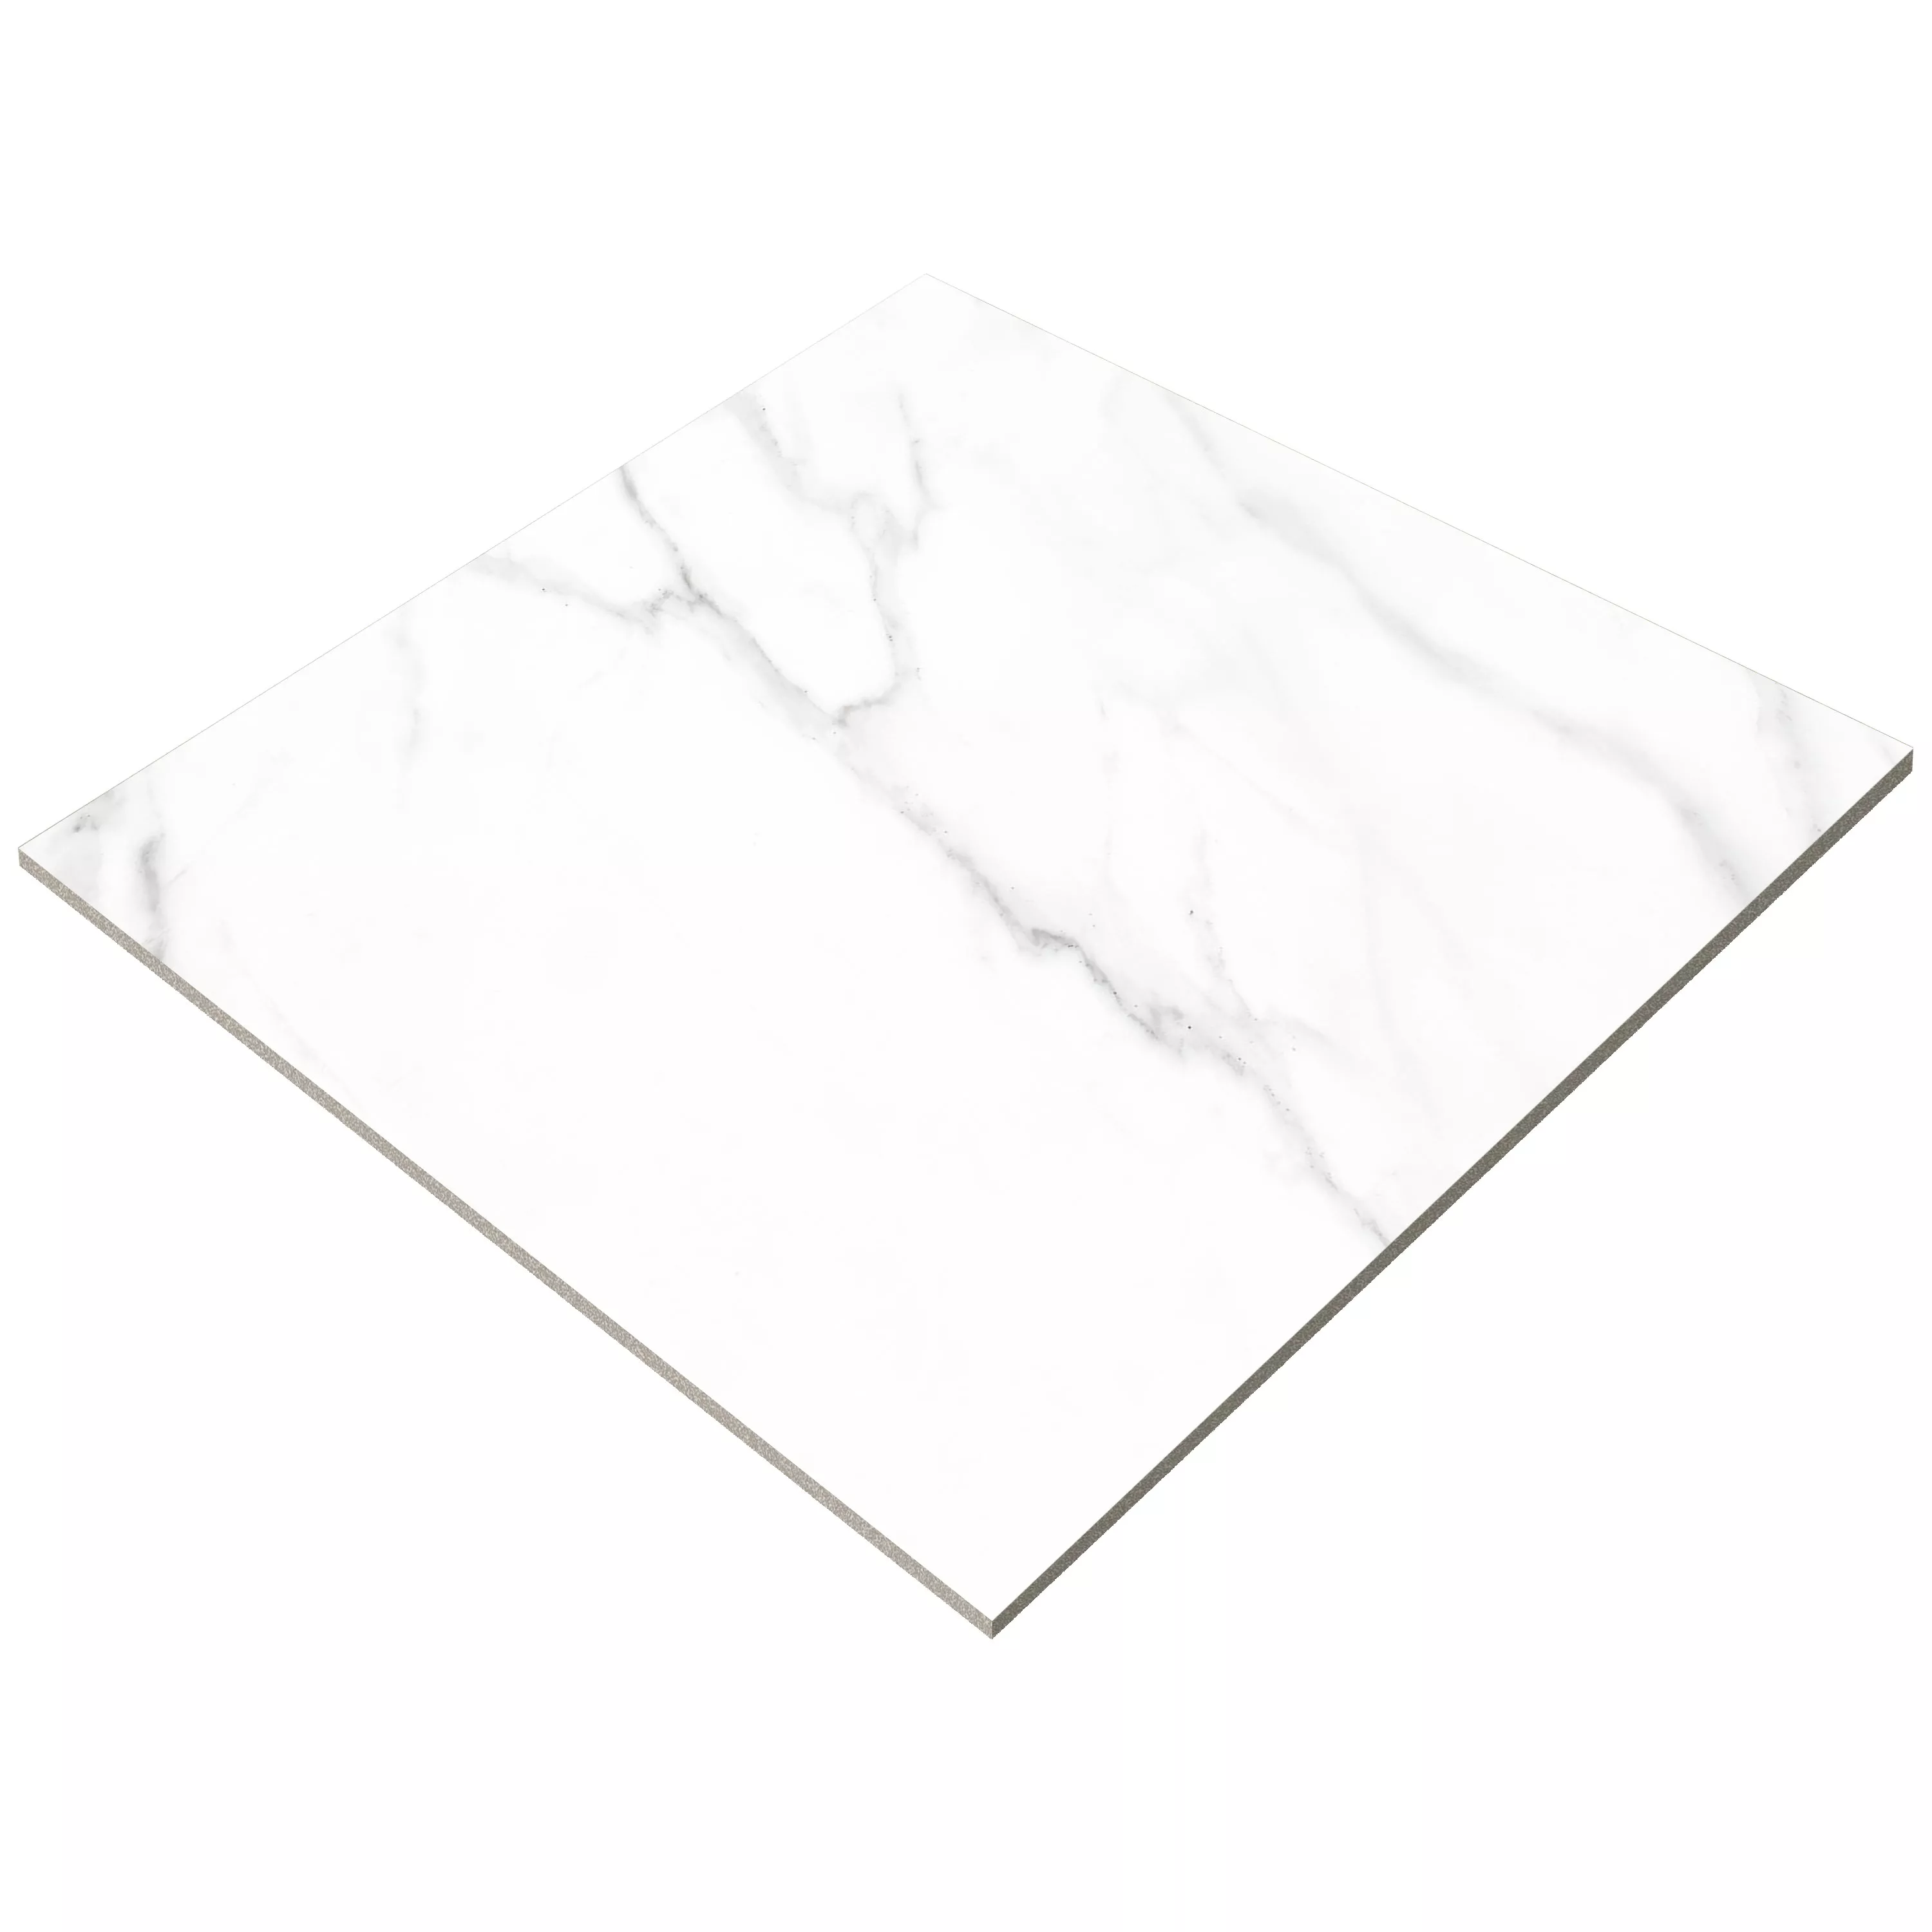 Πλακάκια Δαπέδου Arcadia Μαρμάρινη Όψη Παγωμένος Ασπρο 60x60cm